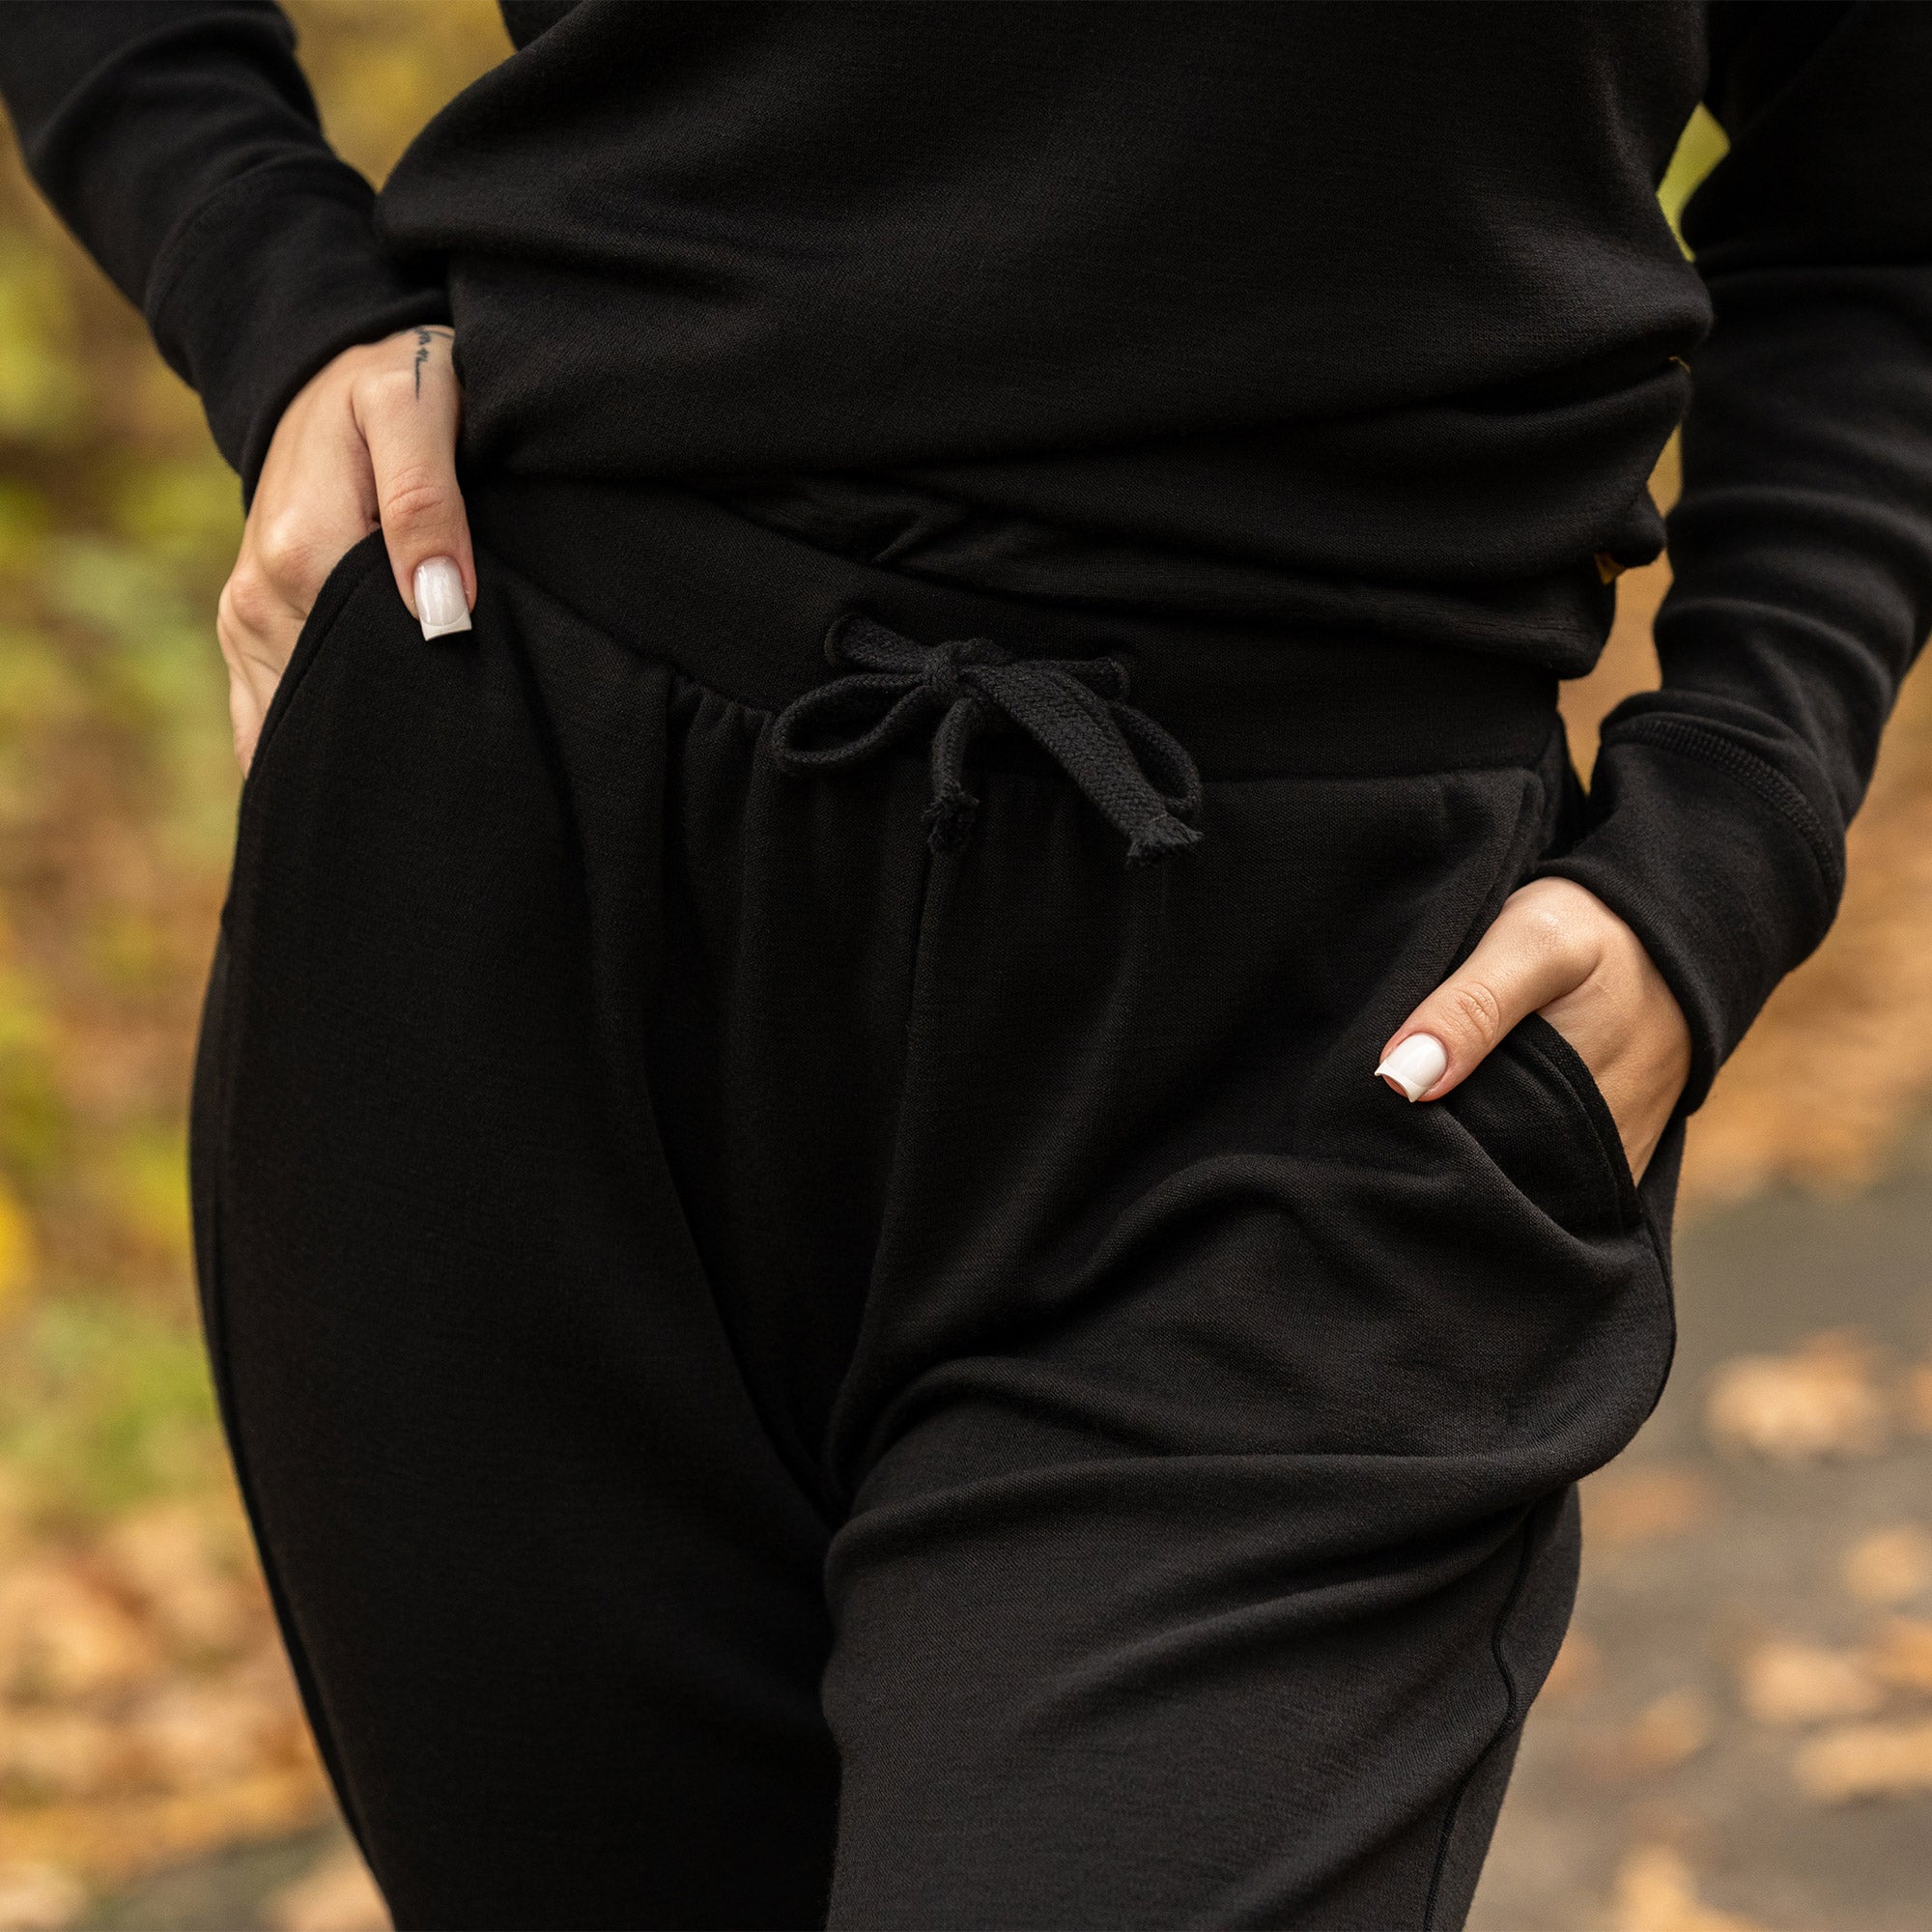 Pantalon de jogging avec poches en laine mérinos pour femme